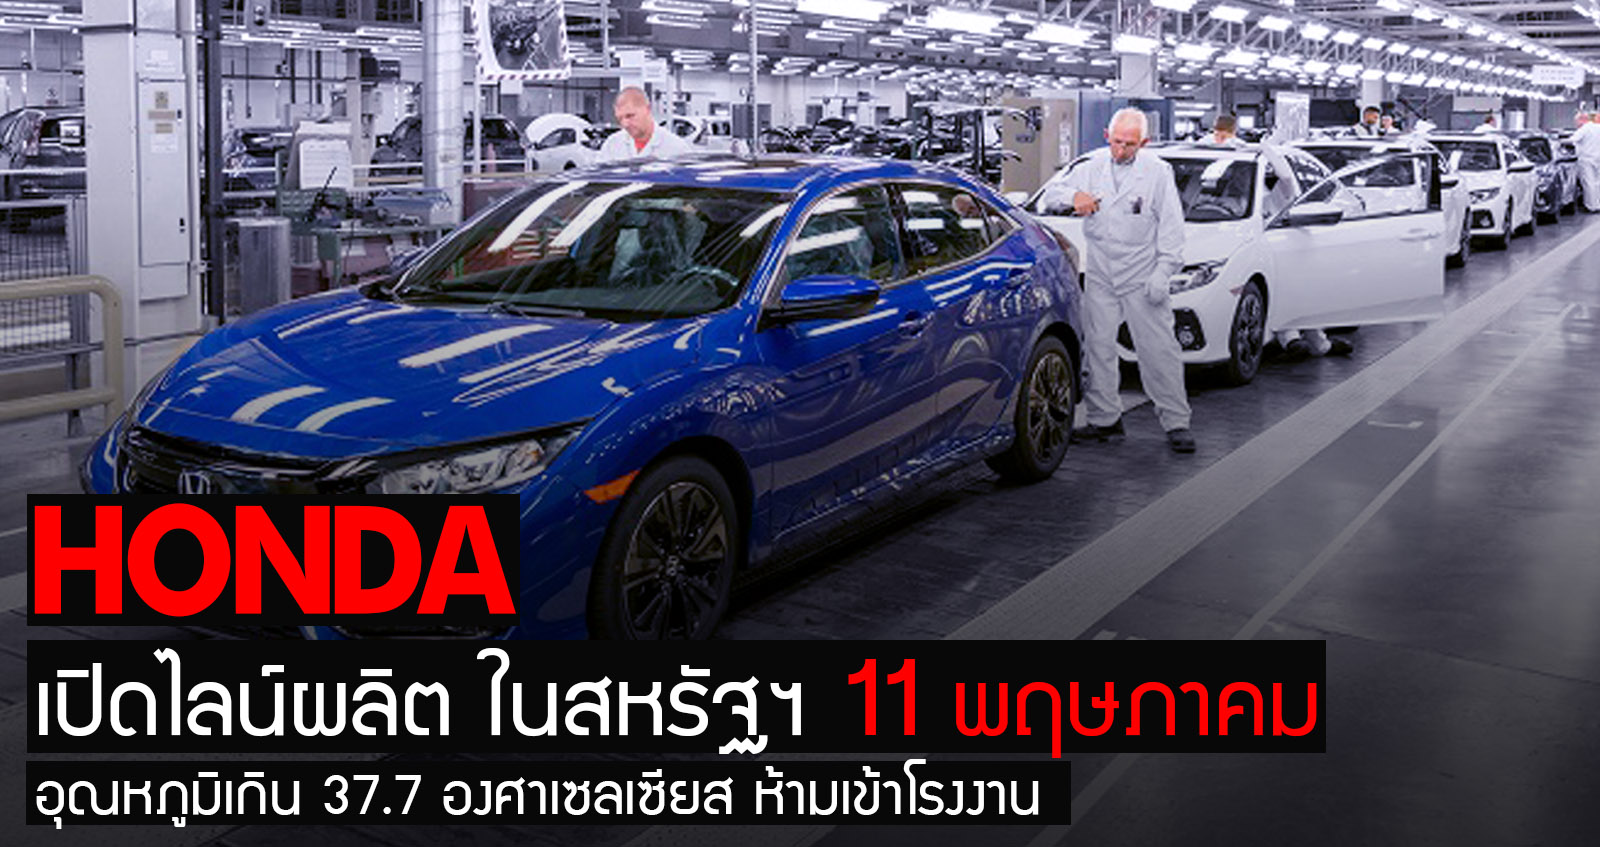 Honda สหรัฐฯ เตรียมเปิดการผลิต 11 พ.ค. ใครอุณหภูมิเกิน 37.7 องศาเซลเซียส ห้ามเข้าโรงงาน